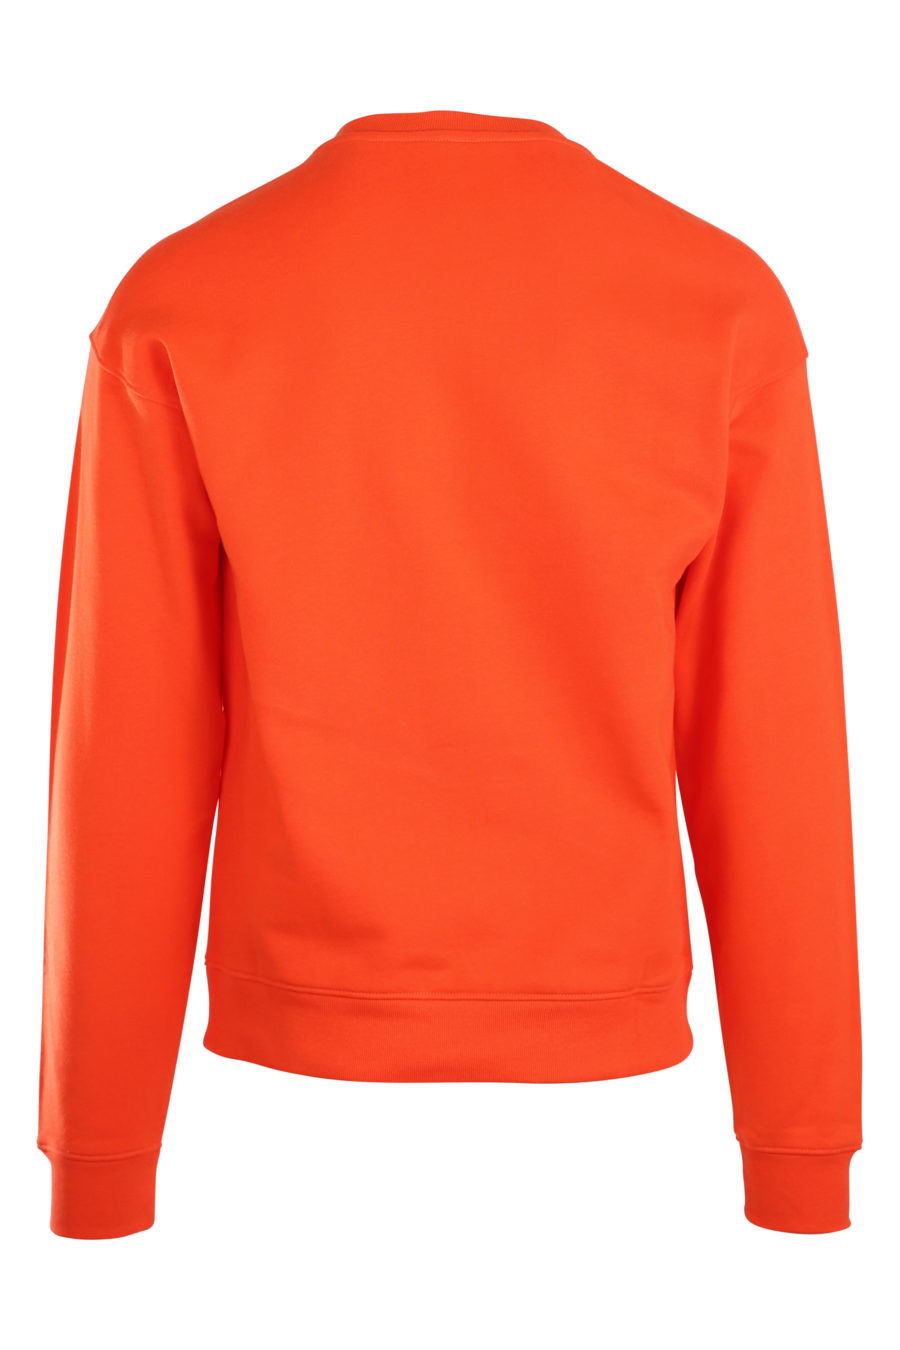 Orange sweatshirt with milano "fantasy" logo - IMG 9949